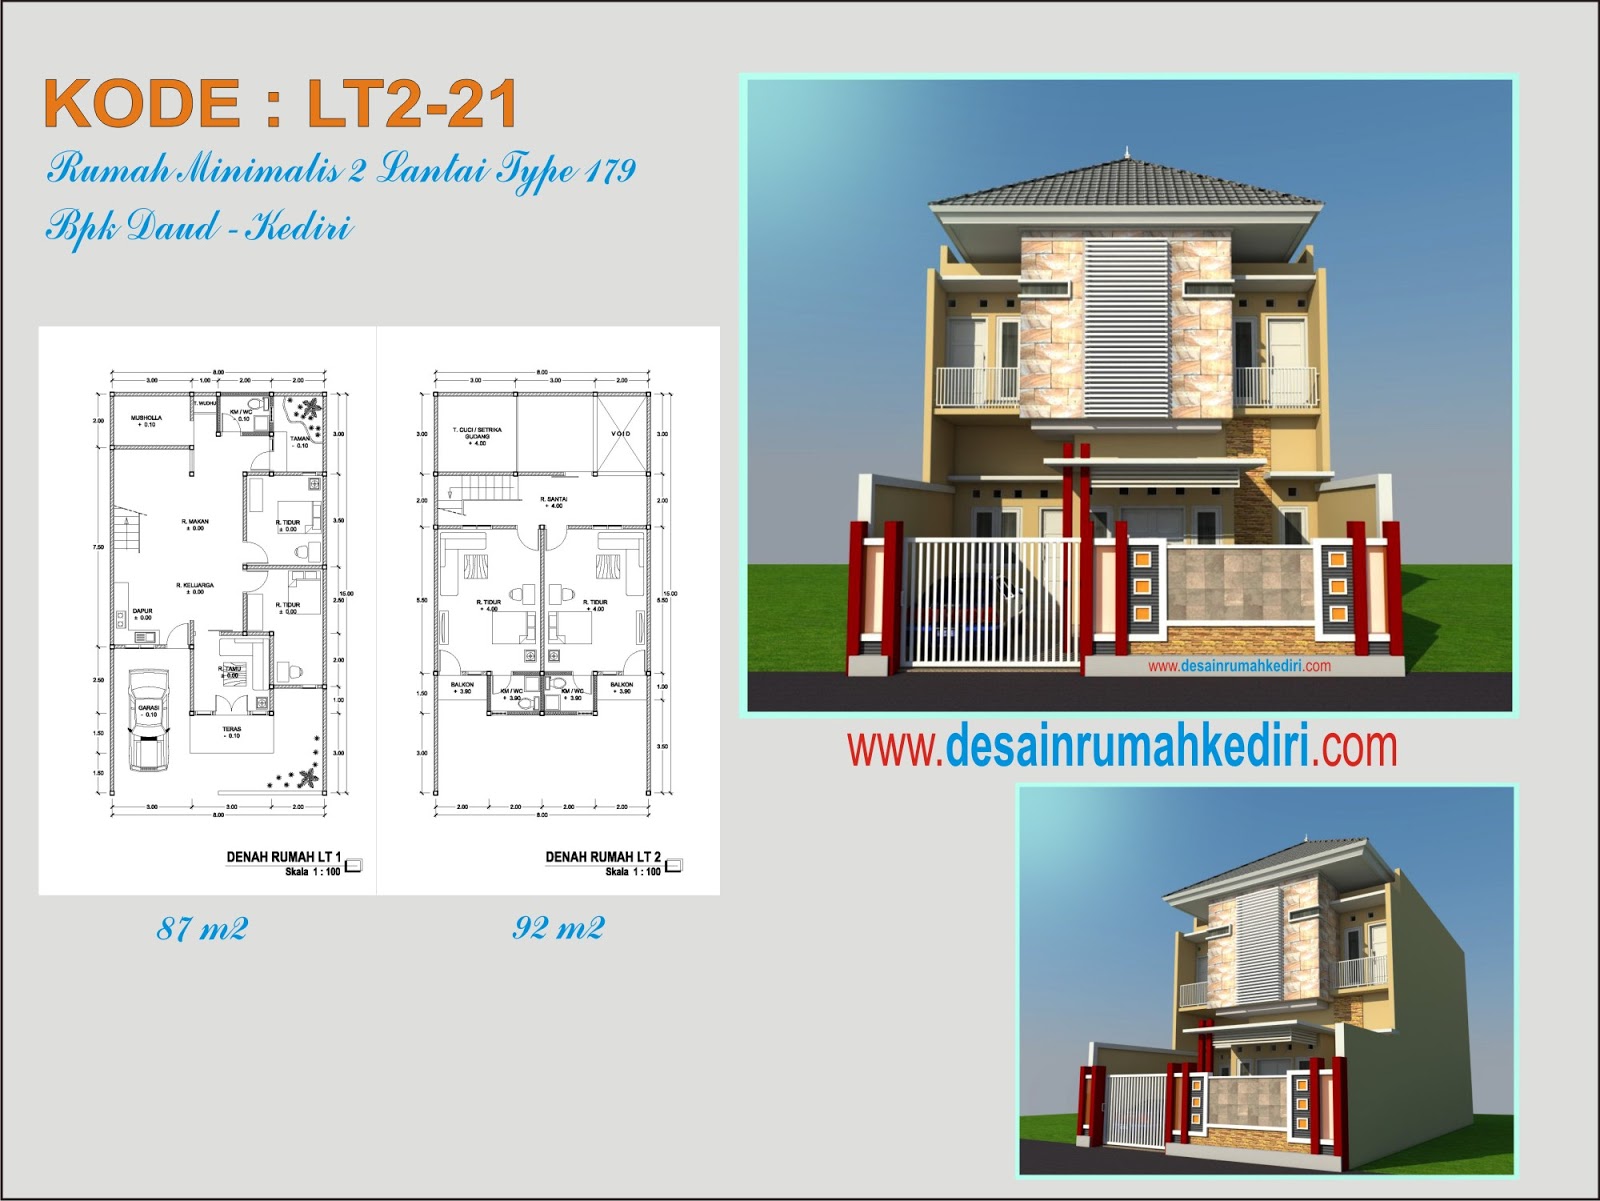 LT2 21 Desain Rumah Minimalis Modern Bpk Daud Kota Kediri Jasa Desain Rumah Terpercaya